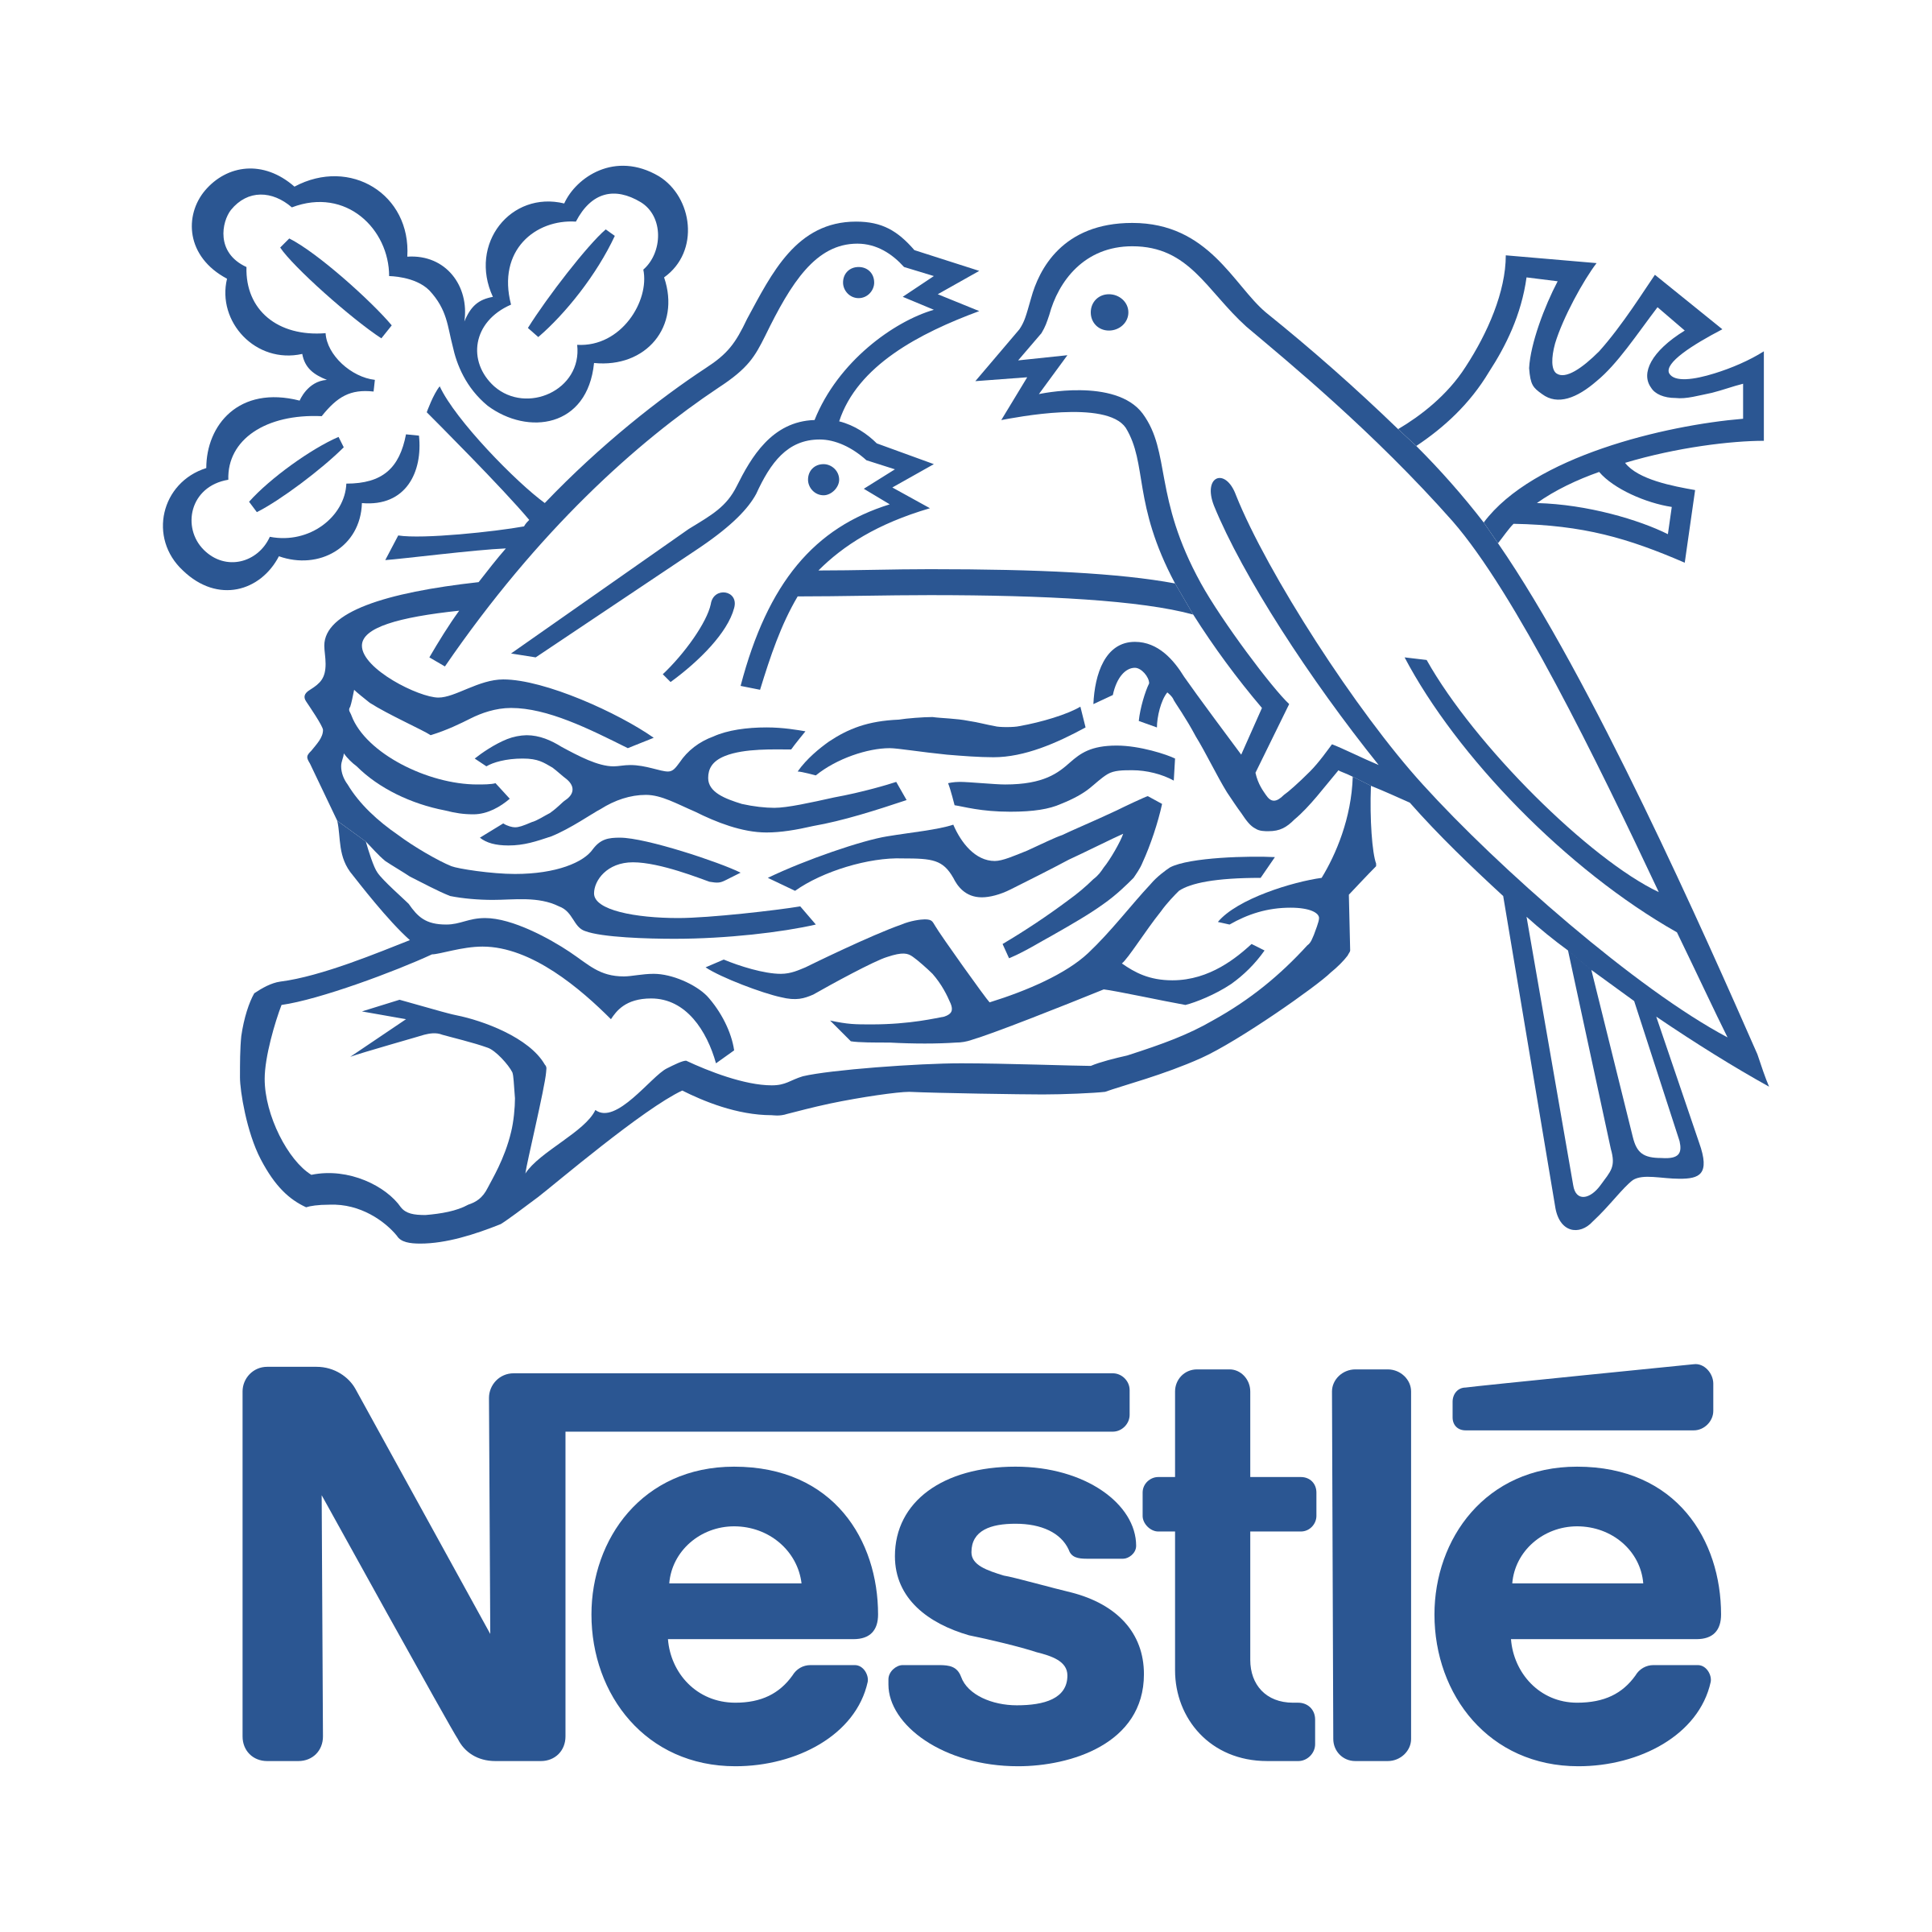 nestle-9-logo-png-transparent.png